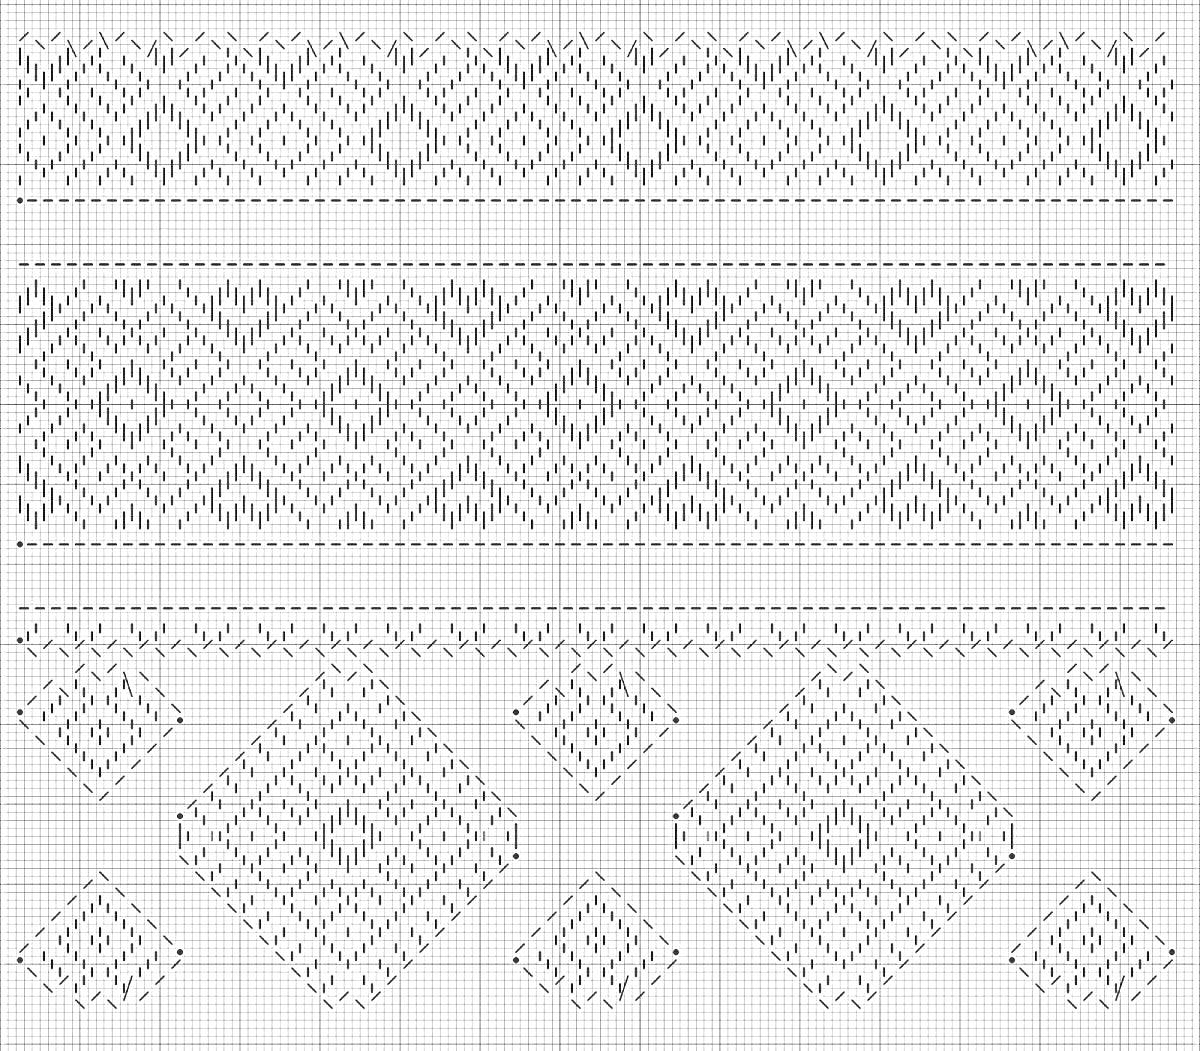 Раскраска Белорусский рушник с узором ромбов и сердец, включающий горизонтальные полосы геометрических узоров, ромбы с крестиками, маленькие символы-крестики